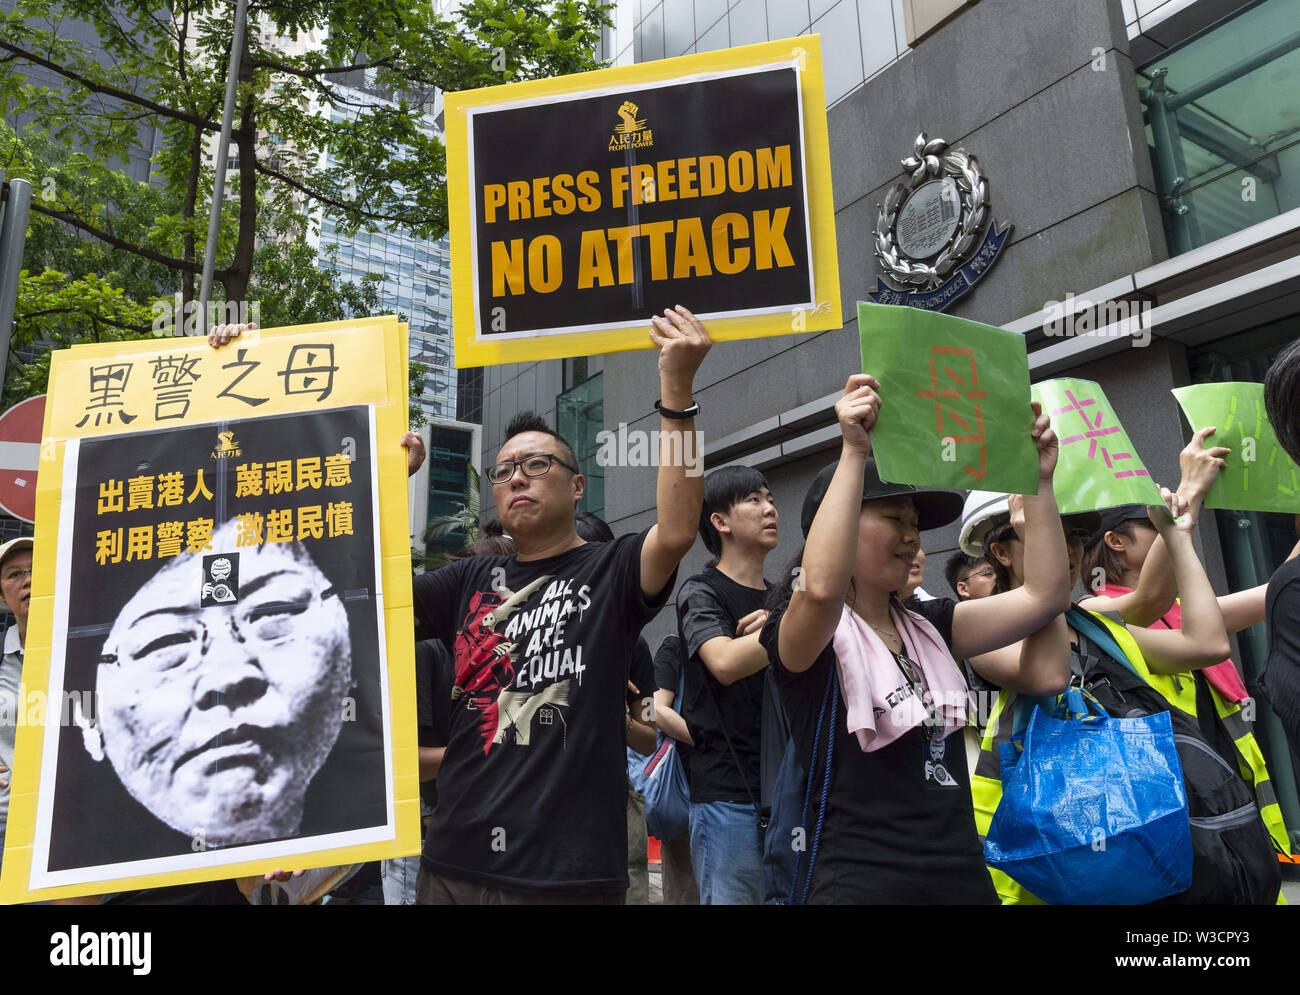 El 14 de julio de 2019, Hong Kong, China: marcha silenciosa en Hong Kong para parar la violencia y defender la libertad de prensa se ve prensa, estudiantes de periodismo y sus educadores tanto en el pasado como en la actualidad se reúnen para protestar. Los manifestantes fuera de la Sede de la policía.La multitud vestía todo de negro, en una muestra de solidaridad. Crédito: Jayne Russell/Zuma alambre/Alamy Live News Foto de stock